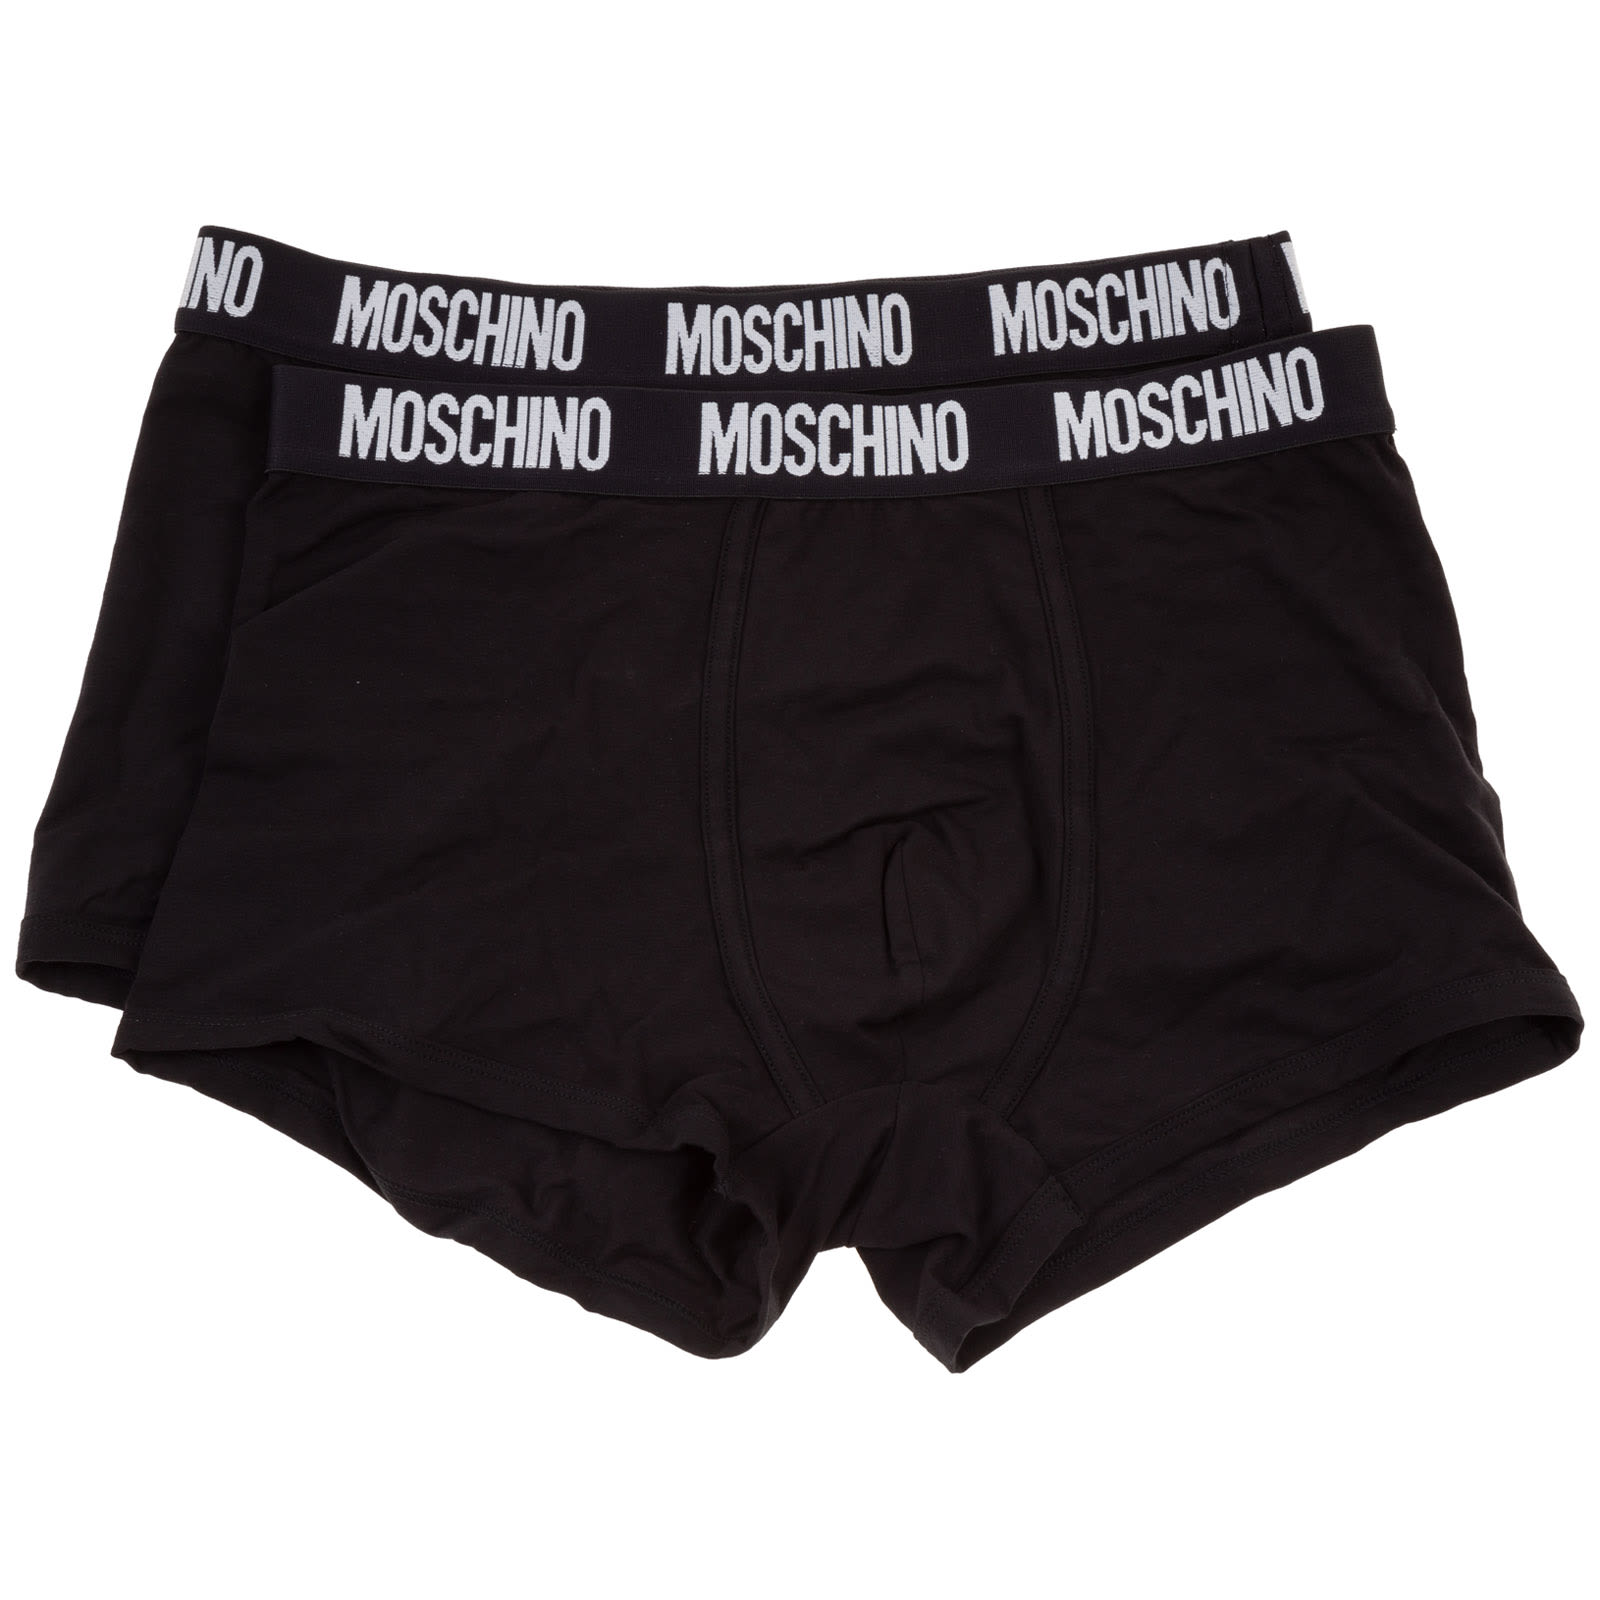 Moschino Bbla Boxer Shorts